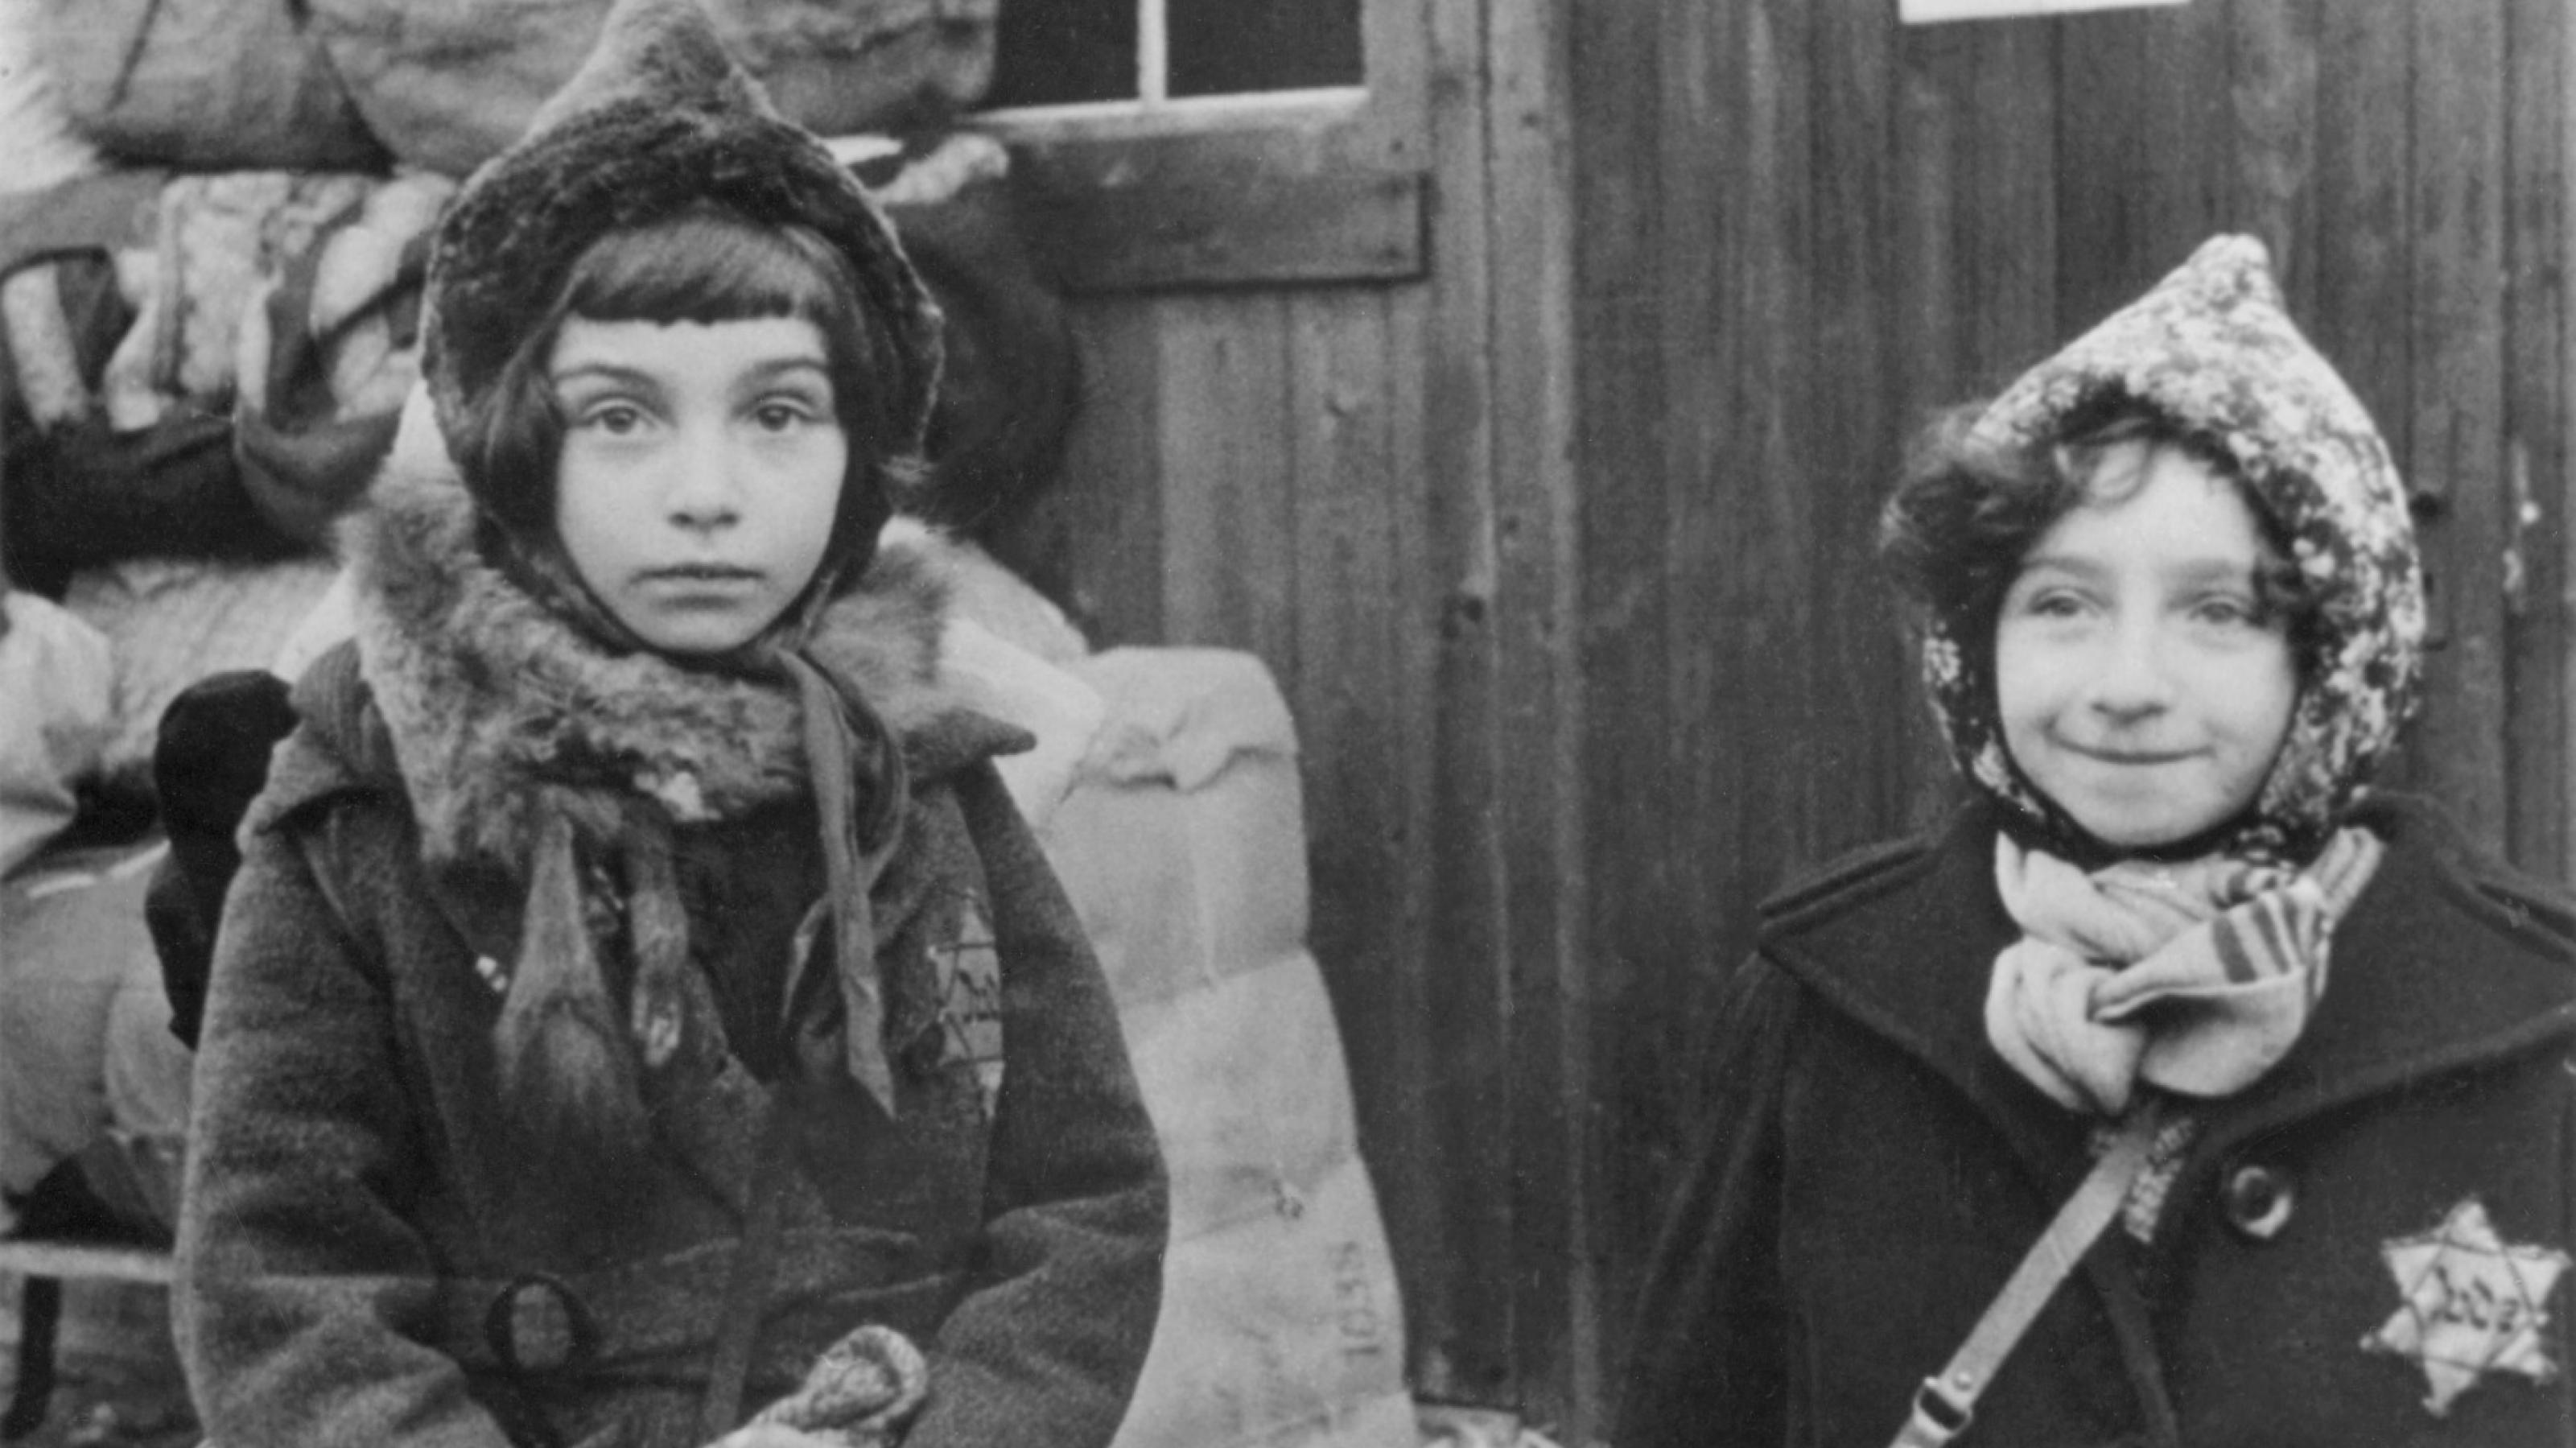 Schwarz-Weiß-Foto von zwei Mädchen in Winterkleidung mit Judenstern auf dem Mantel. Sie wurden wenig später nach Litauen verschleppt und ermordet.